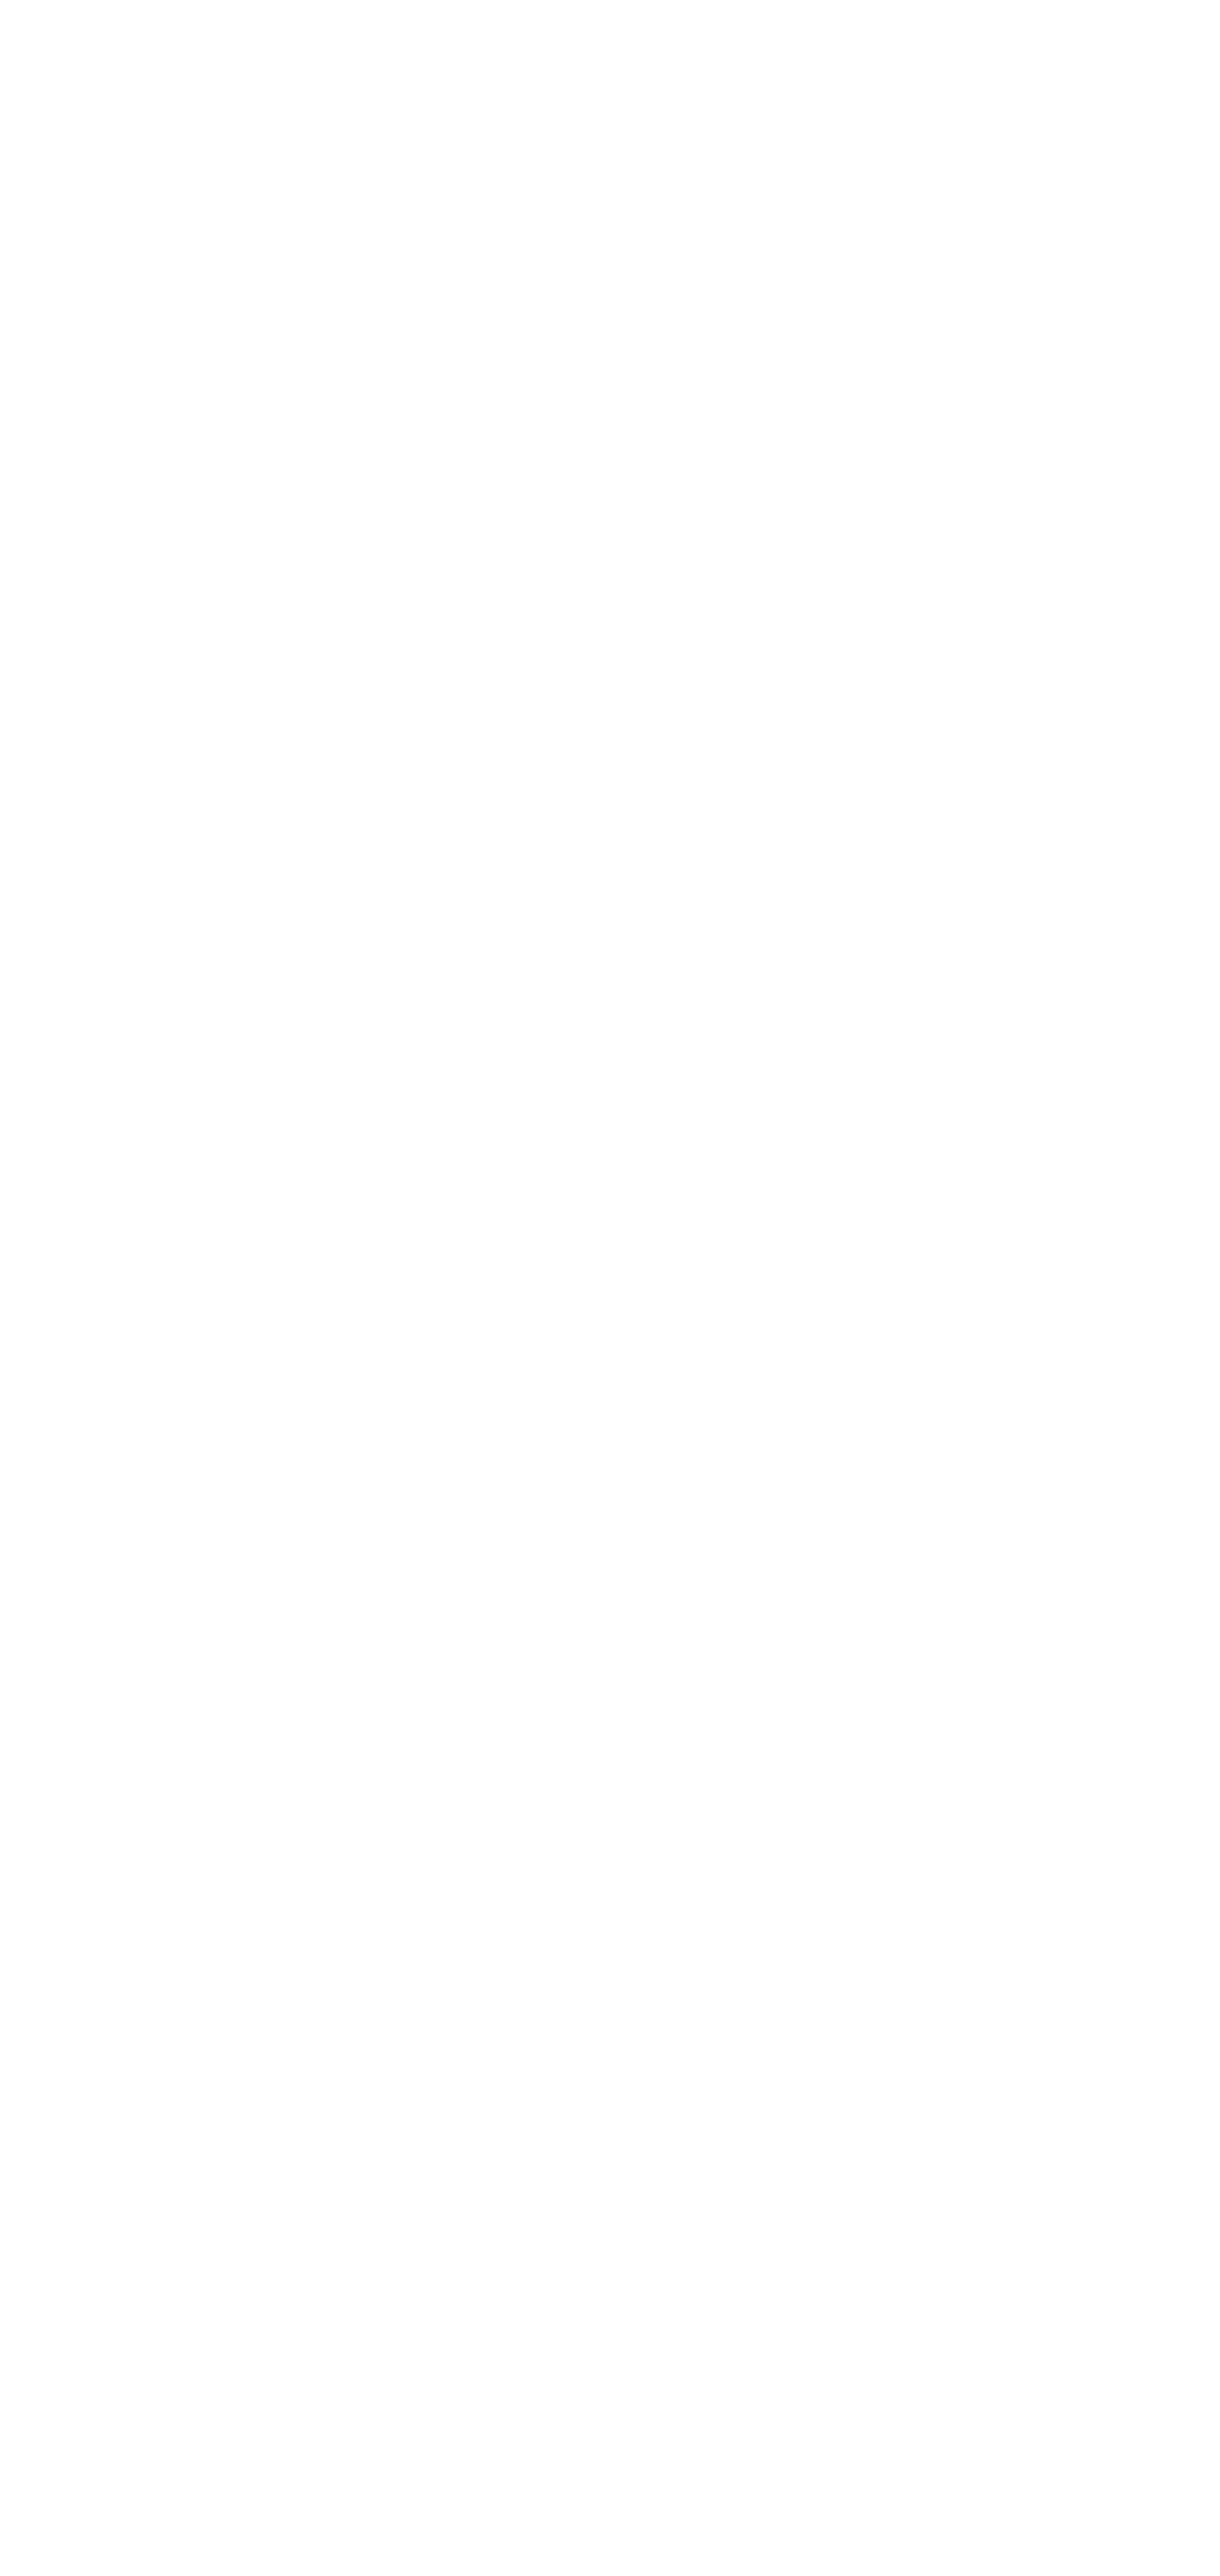 Białe Logo PRZEZROCZYSTE (2)